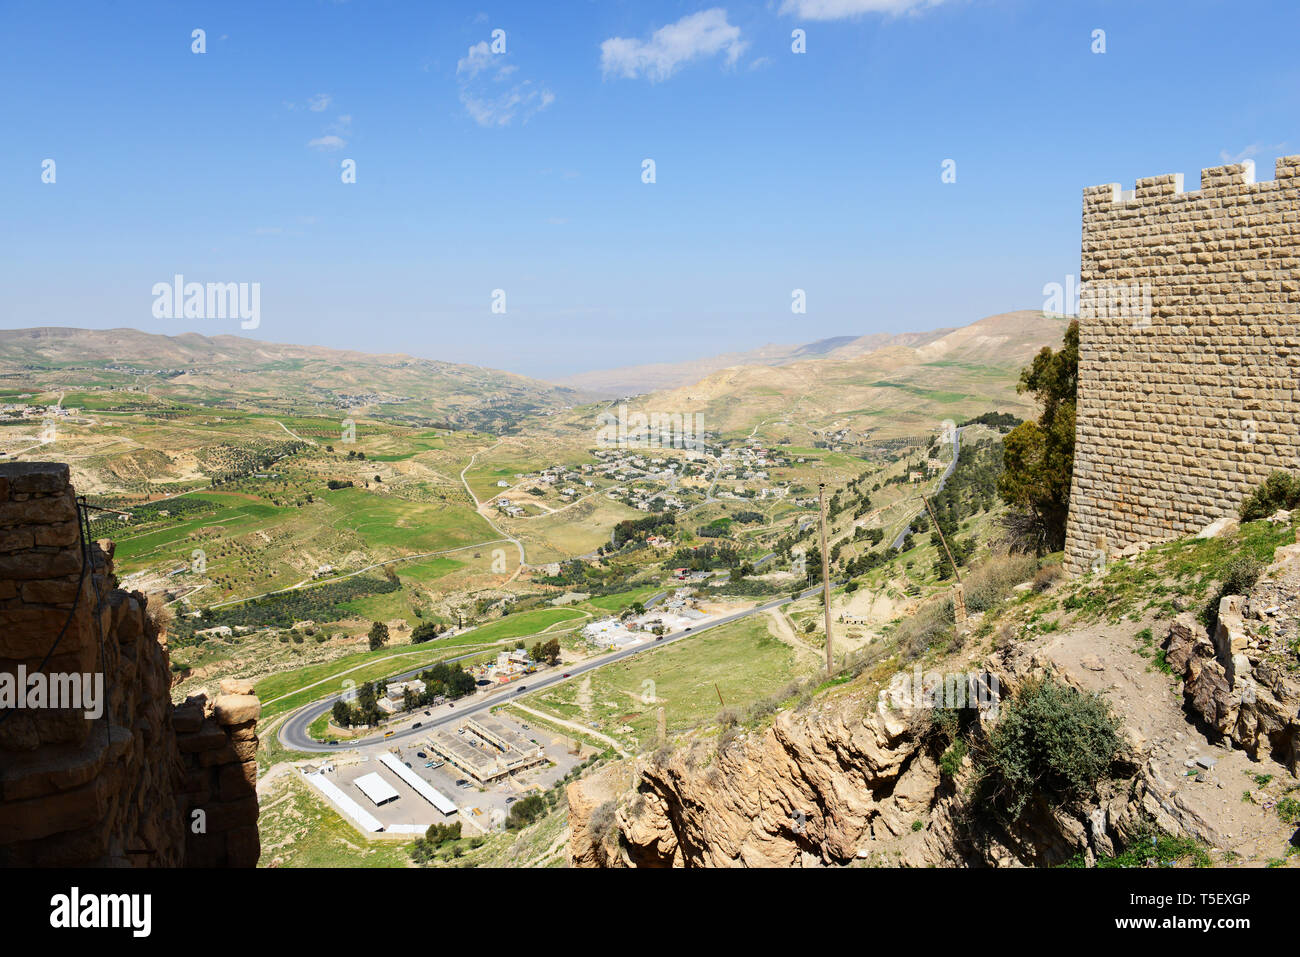 Beautiful scenery as seen from the Kerak castle in Jordan. Stock Photo